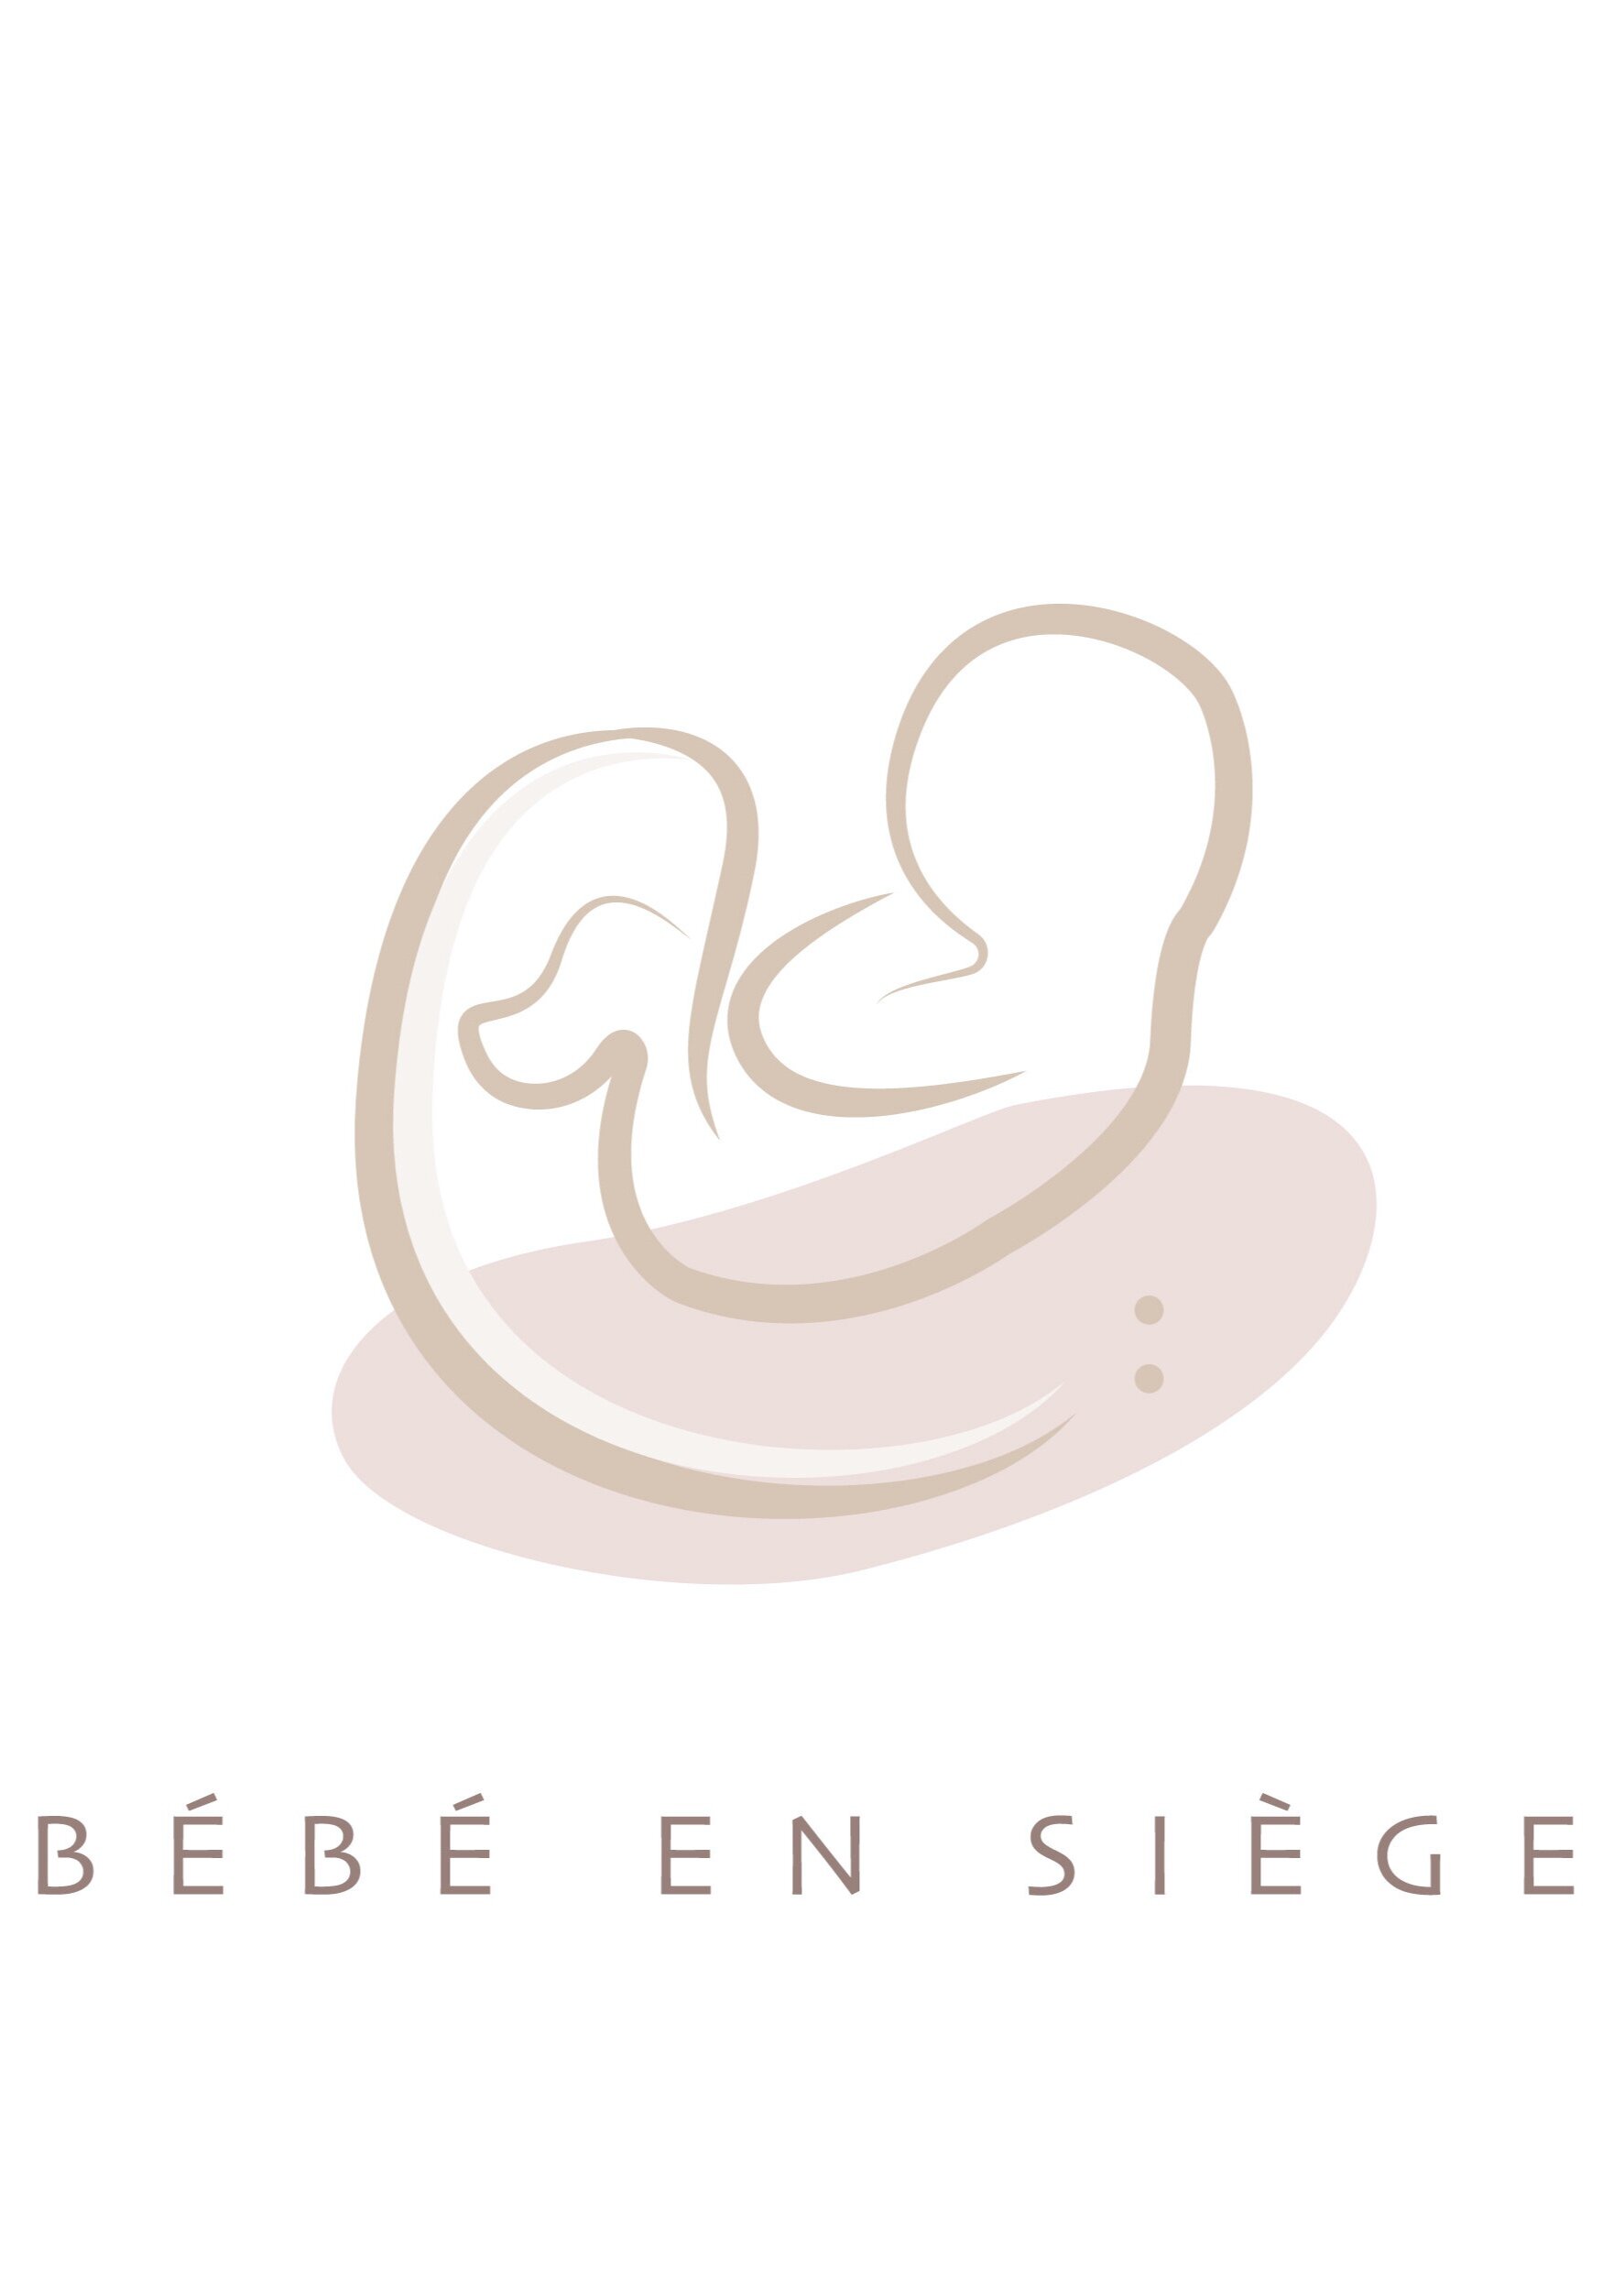 Icones-bebe+ensiege.jpg